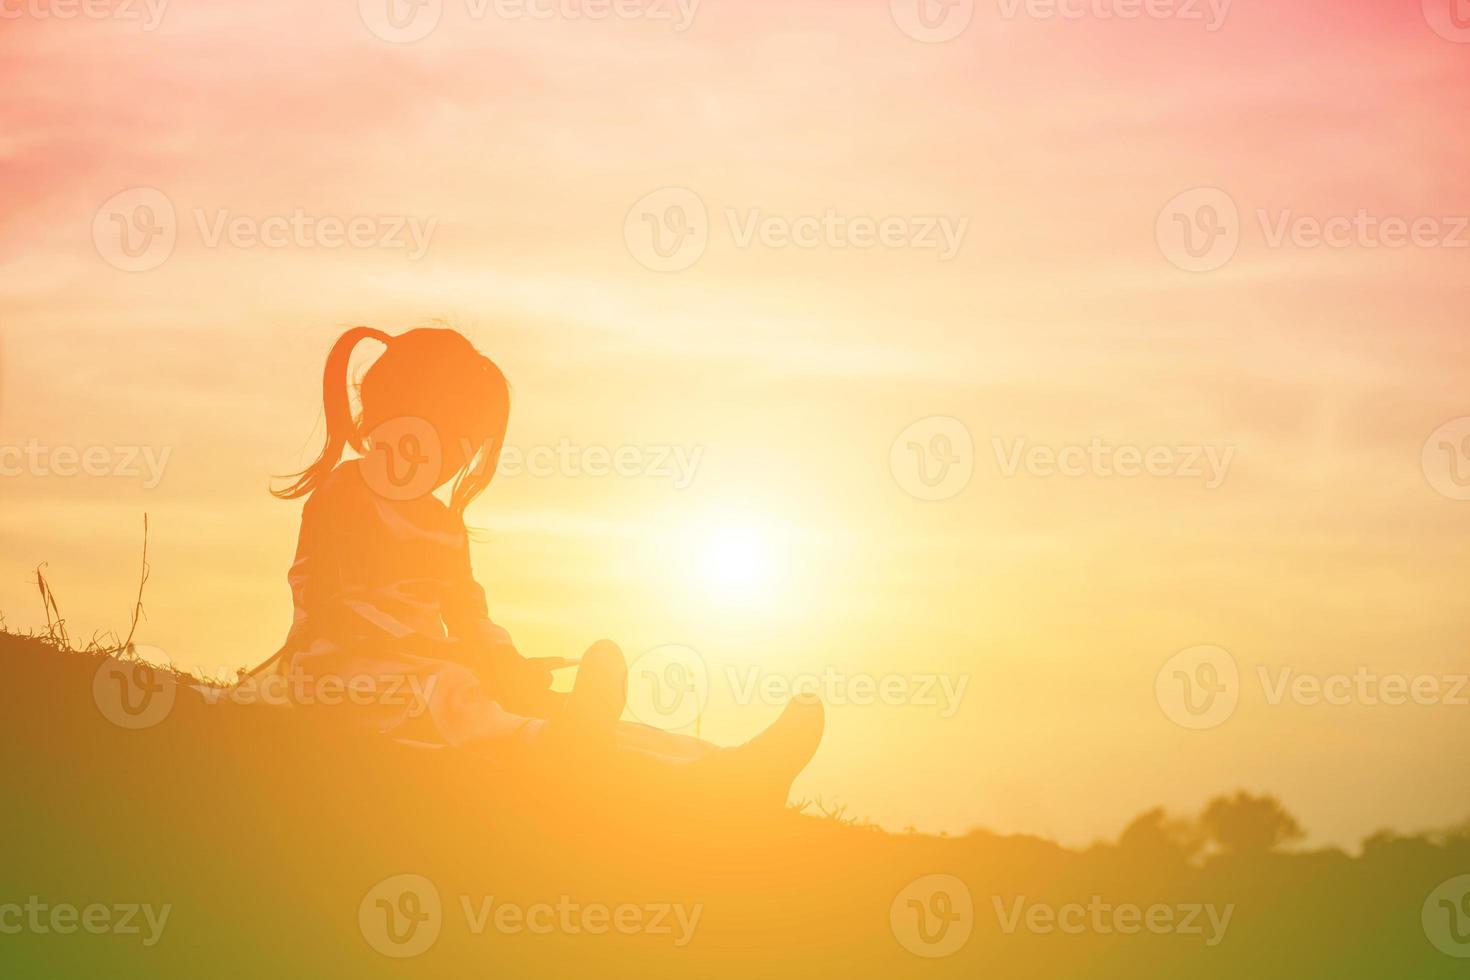 silueta de niño, momentos de alegría del niño. en la puesta de sol de la naturaleza foto